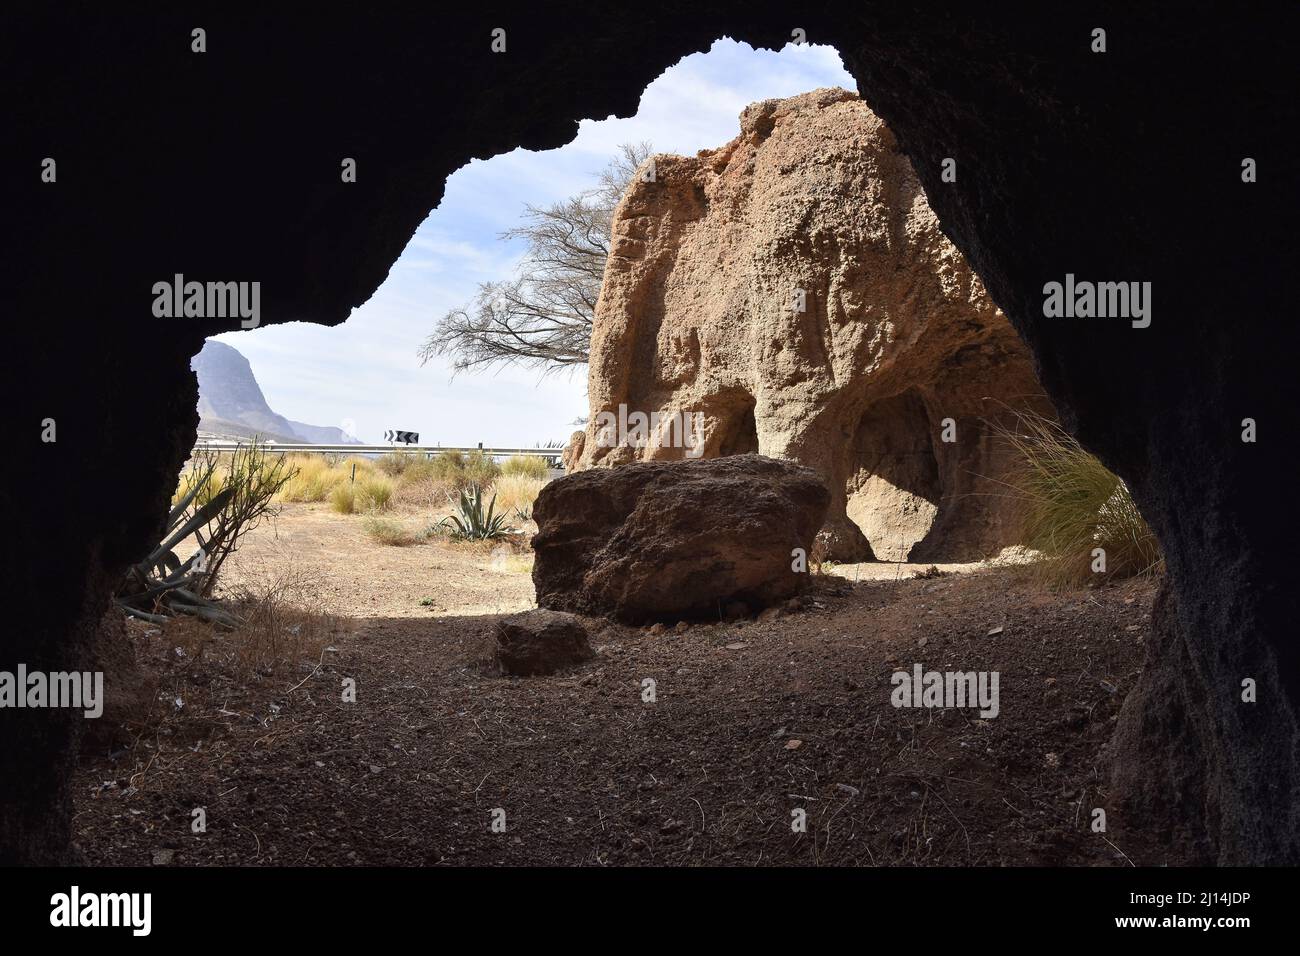 Cueva de las Cruces - antico insediamento rupestre situato nella provincia di Galdar, a nord-ovest di Gran Canaria Isole Canarie Spagna. Foto Stock